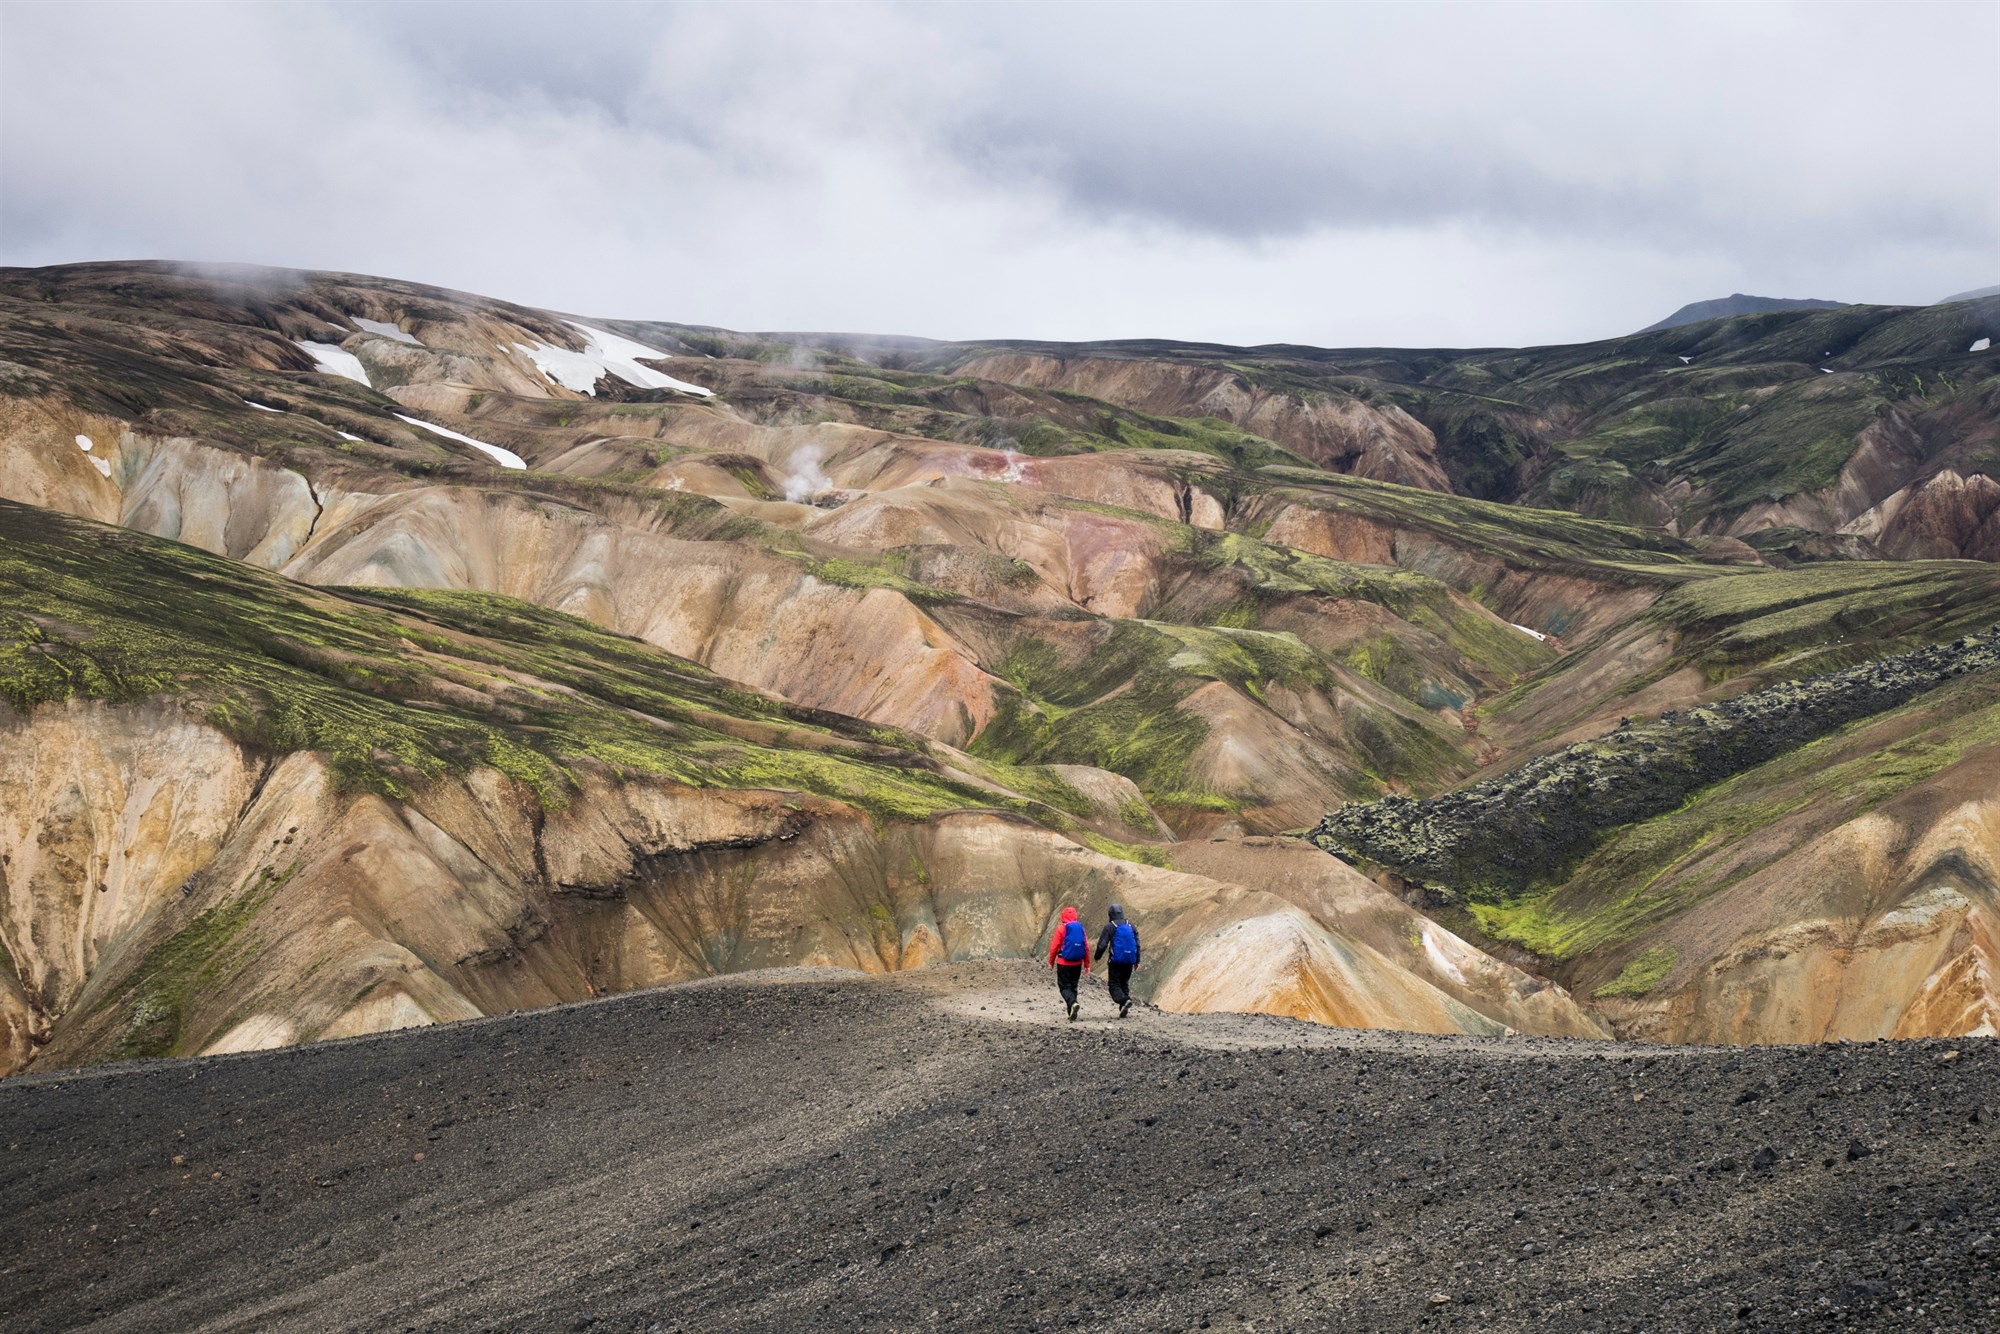 Two people hiking through the mountains in Landmannalaugar, Iceland